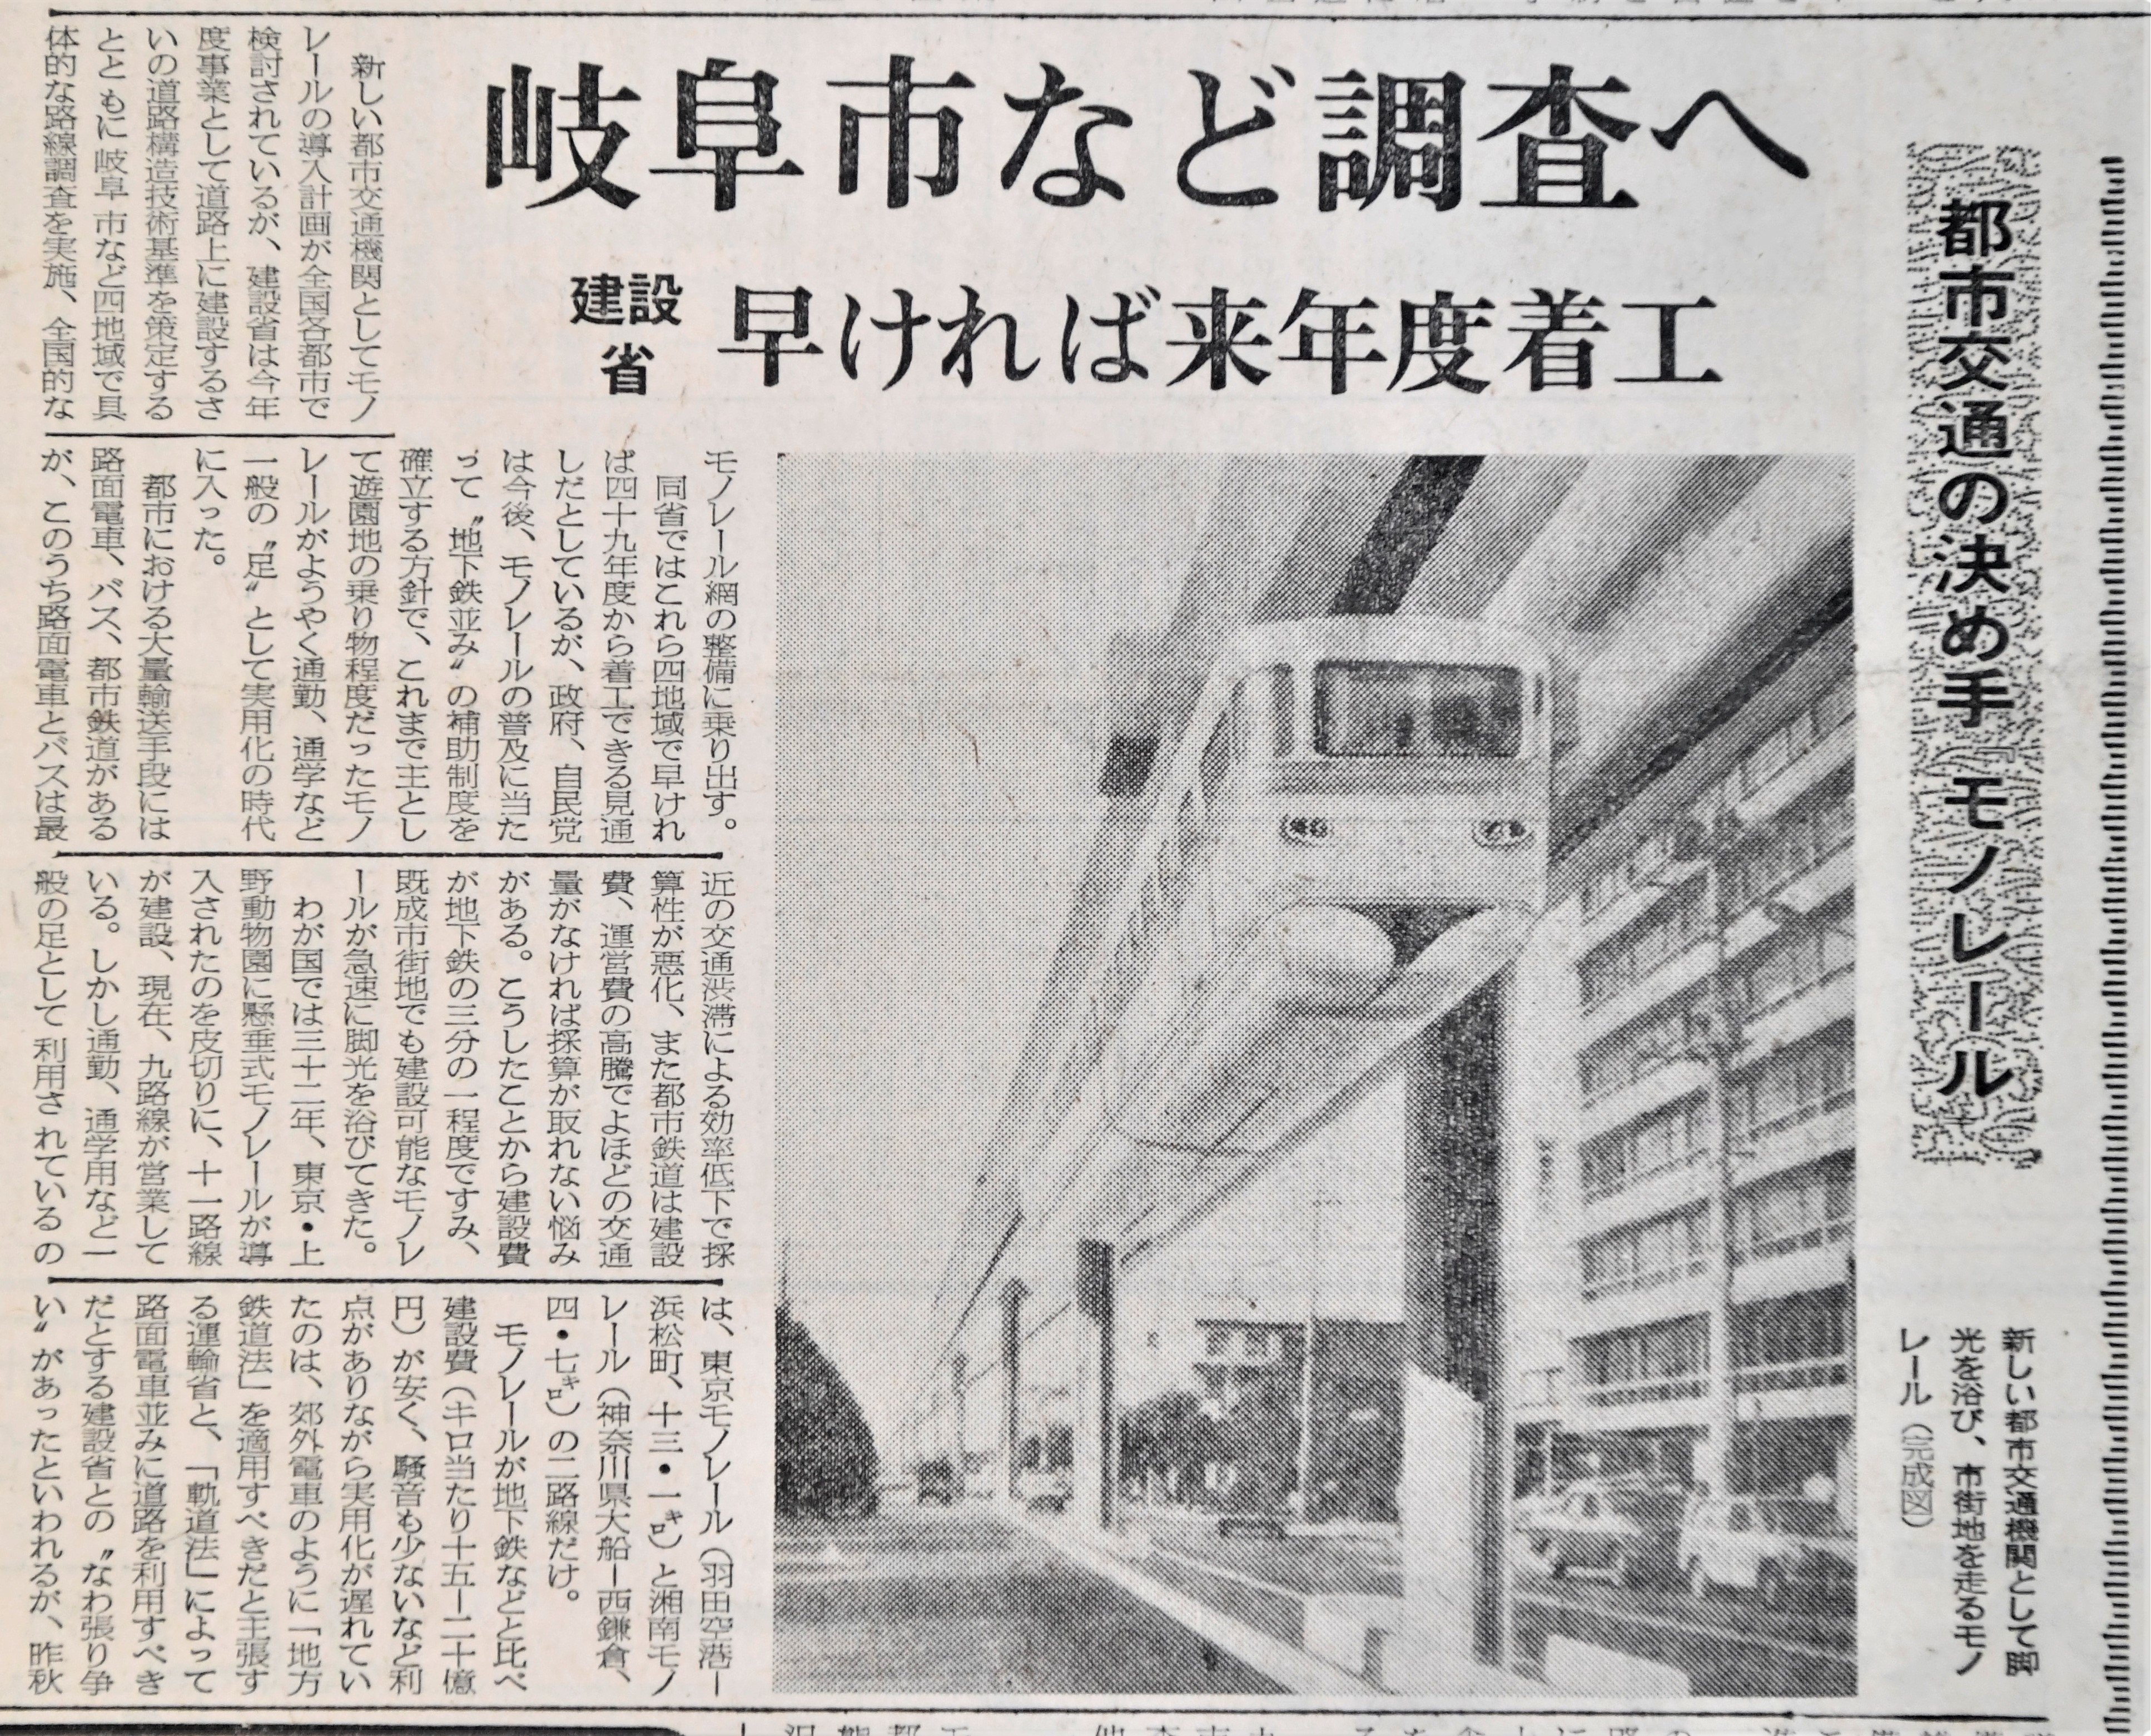 岐阜に 幻のモノレール構想 半世紀前に計画 なぜ実現しなかった 岐阜新聞web